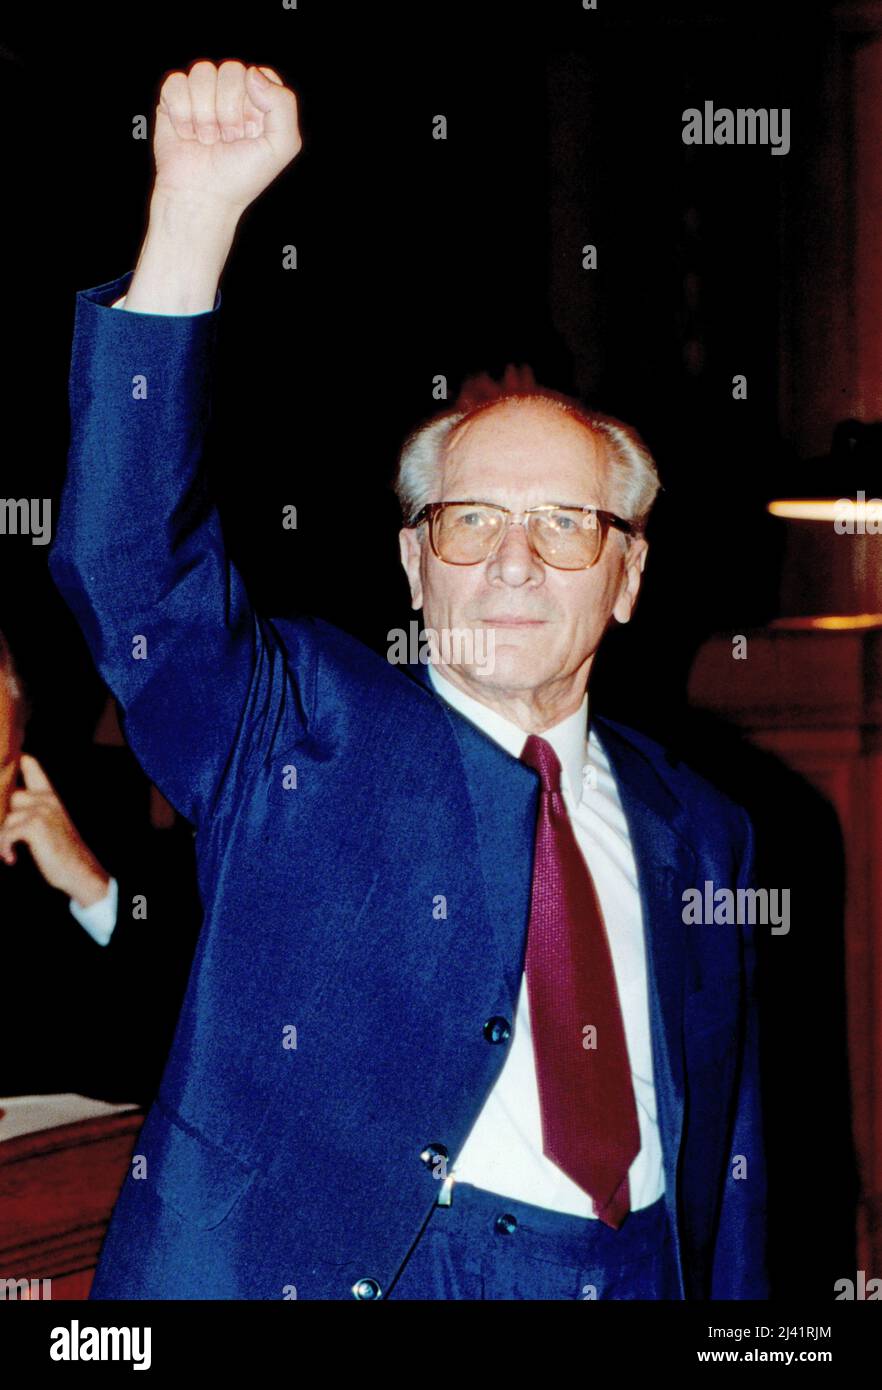 Erich Honecker, ehemaliger Generalsekretär des Zentralkomitees der SED und Staatsratsvorsitzender der DDR, mit erhobener Faust auf dem Weg zu seinem Prozess vor dem Landgericht in Berlin, Deutschland 1992. Stock Photo